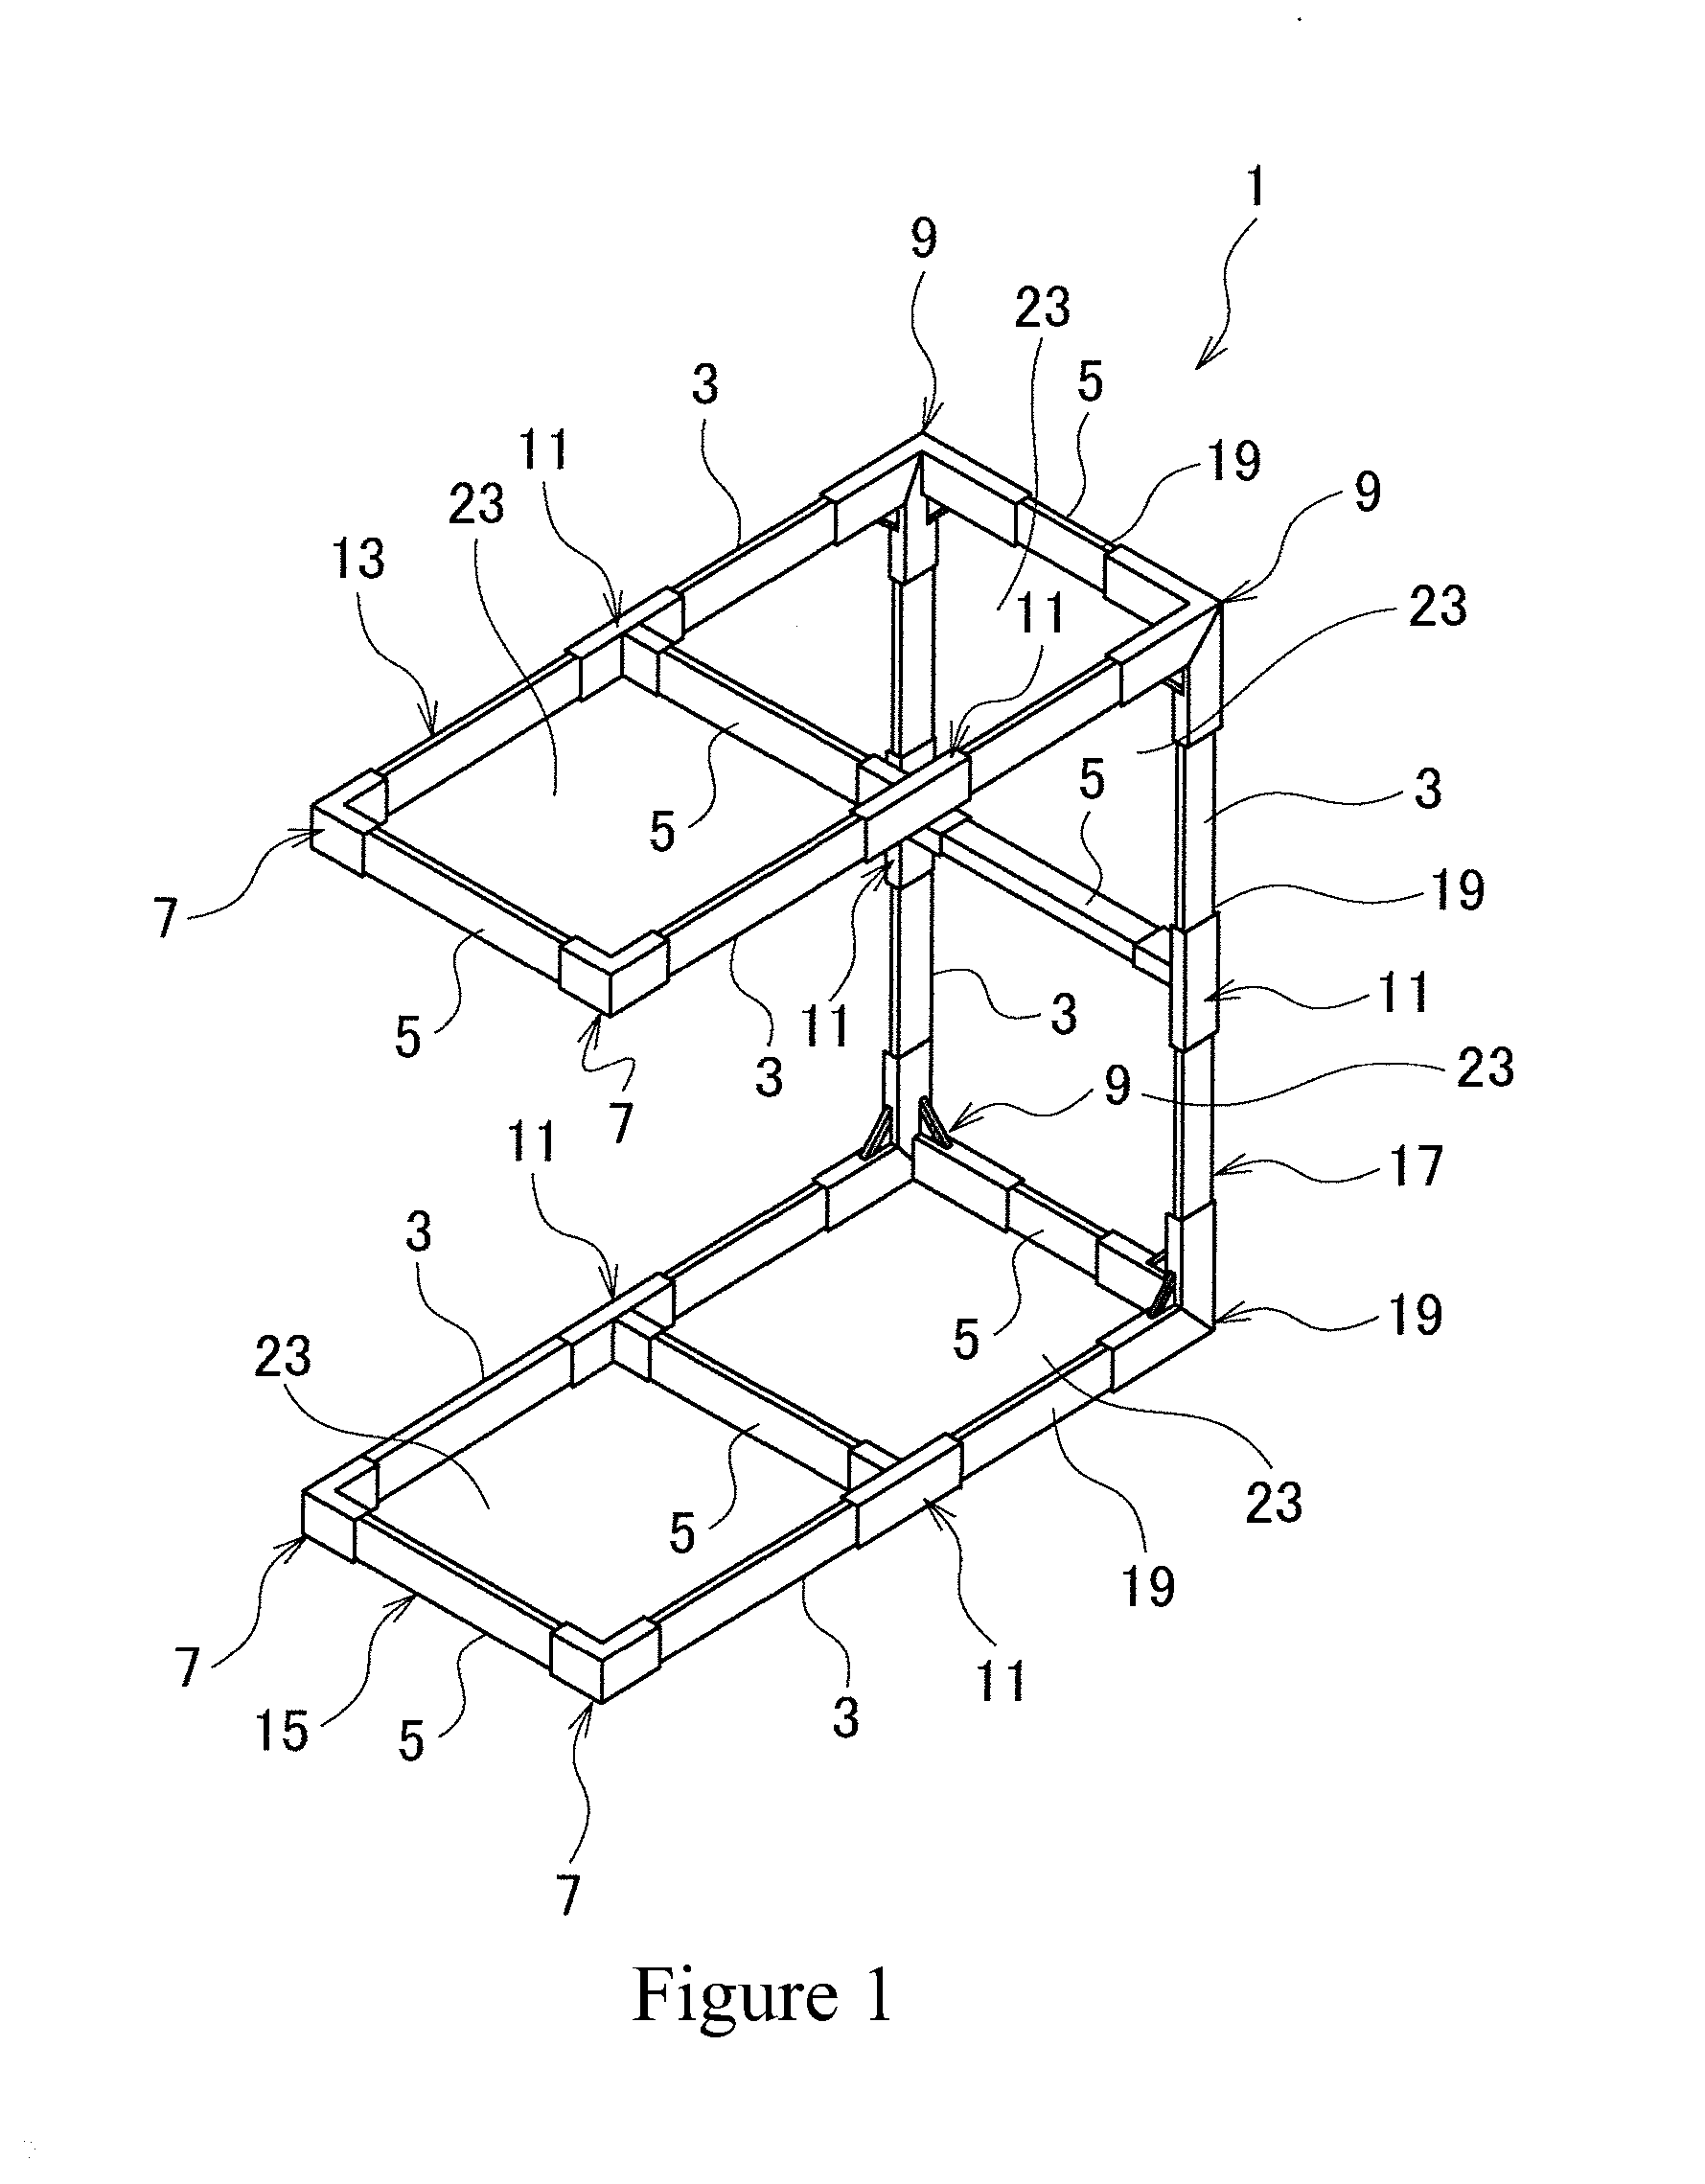 Multi-purpose mobile modular structure